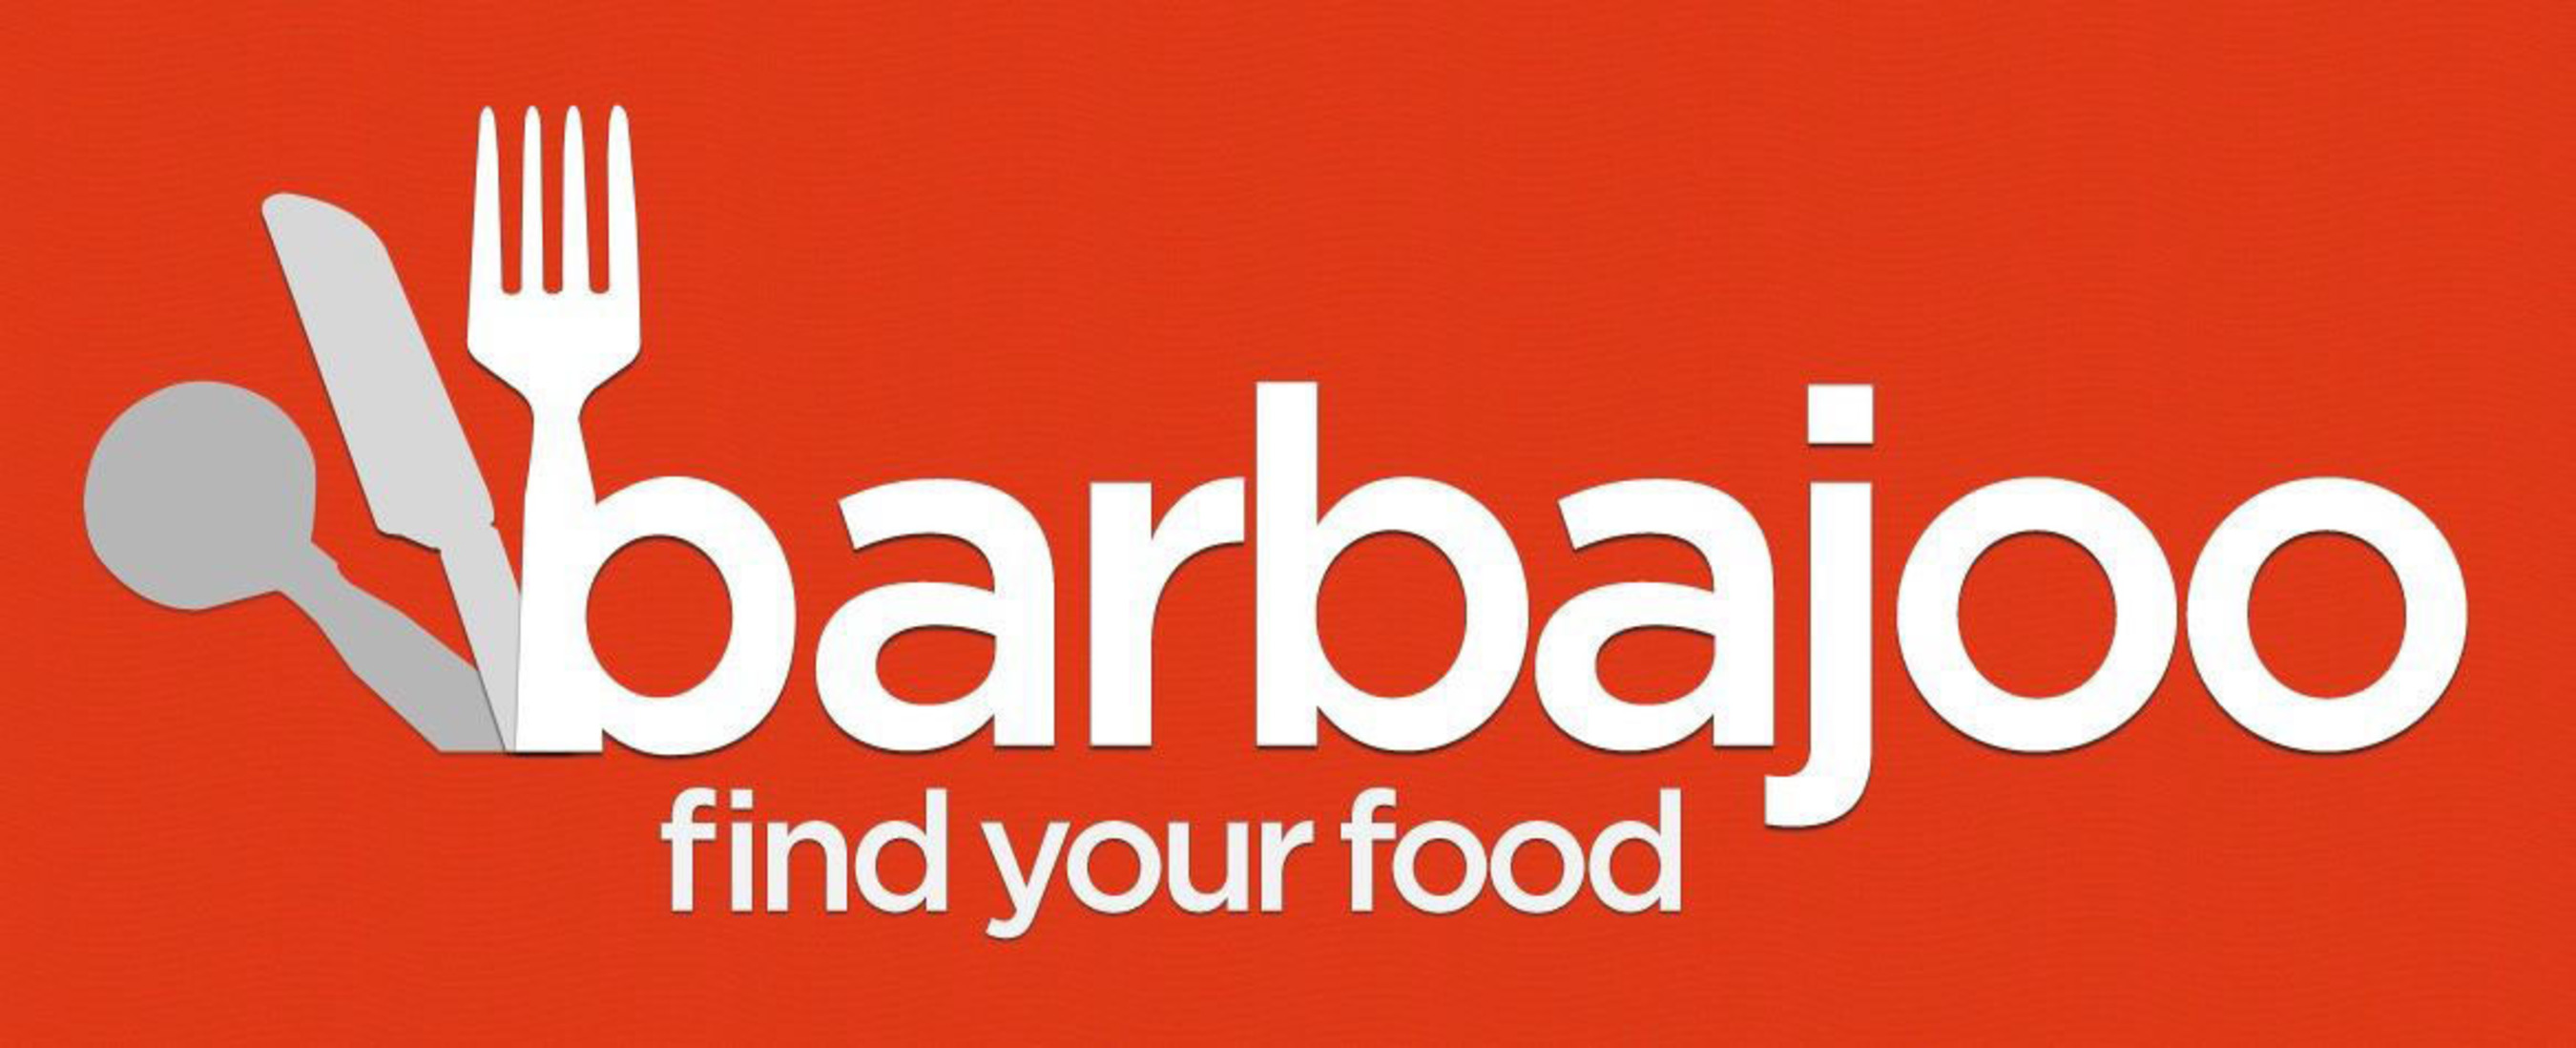 Barbajoo Logo. (PRNewsFoto/Barbajoo) (PRNewsFoto/BARBAJOO)